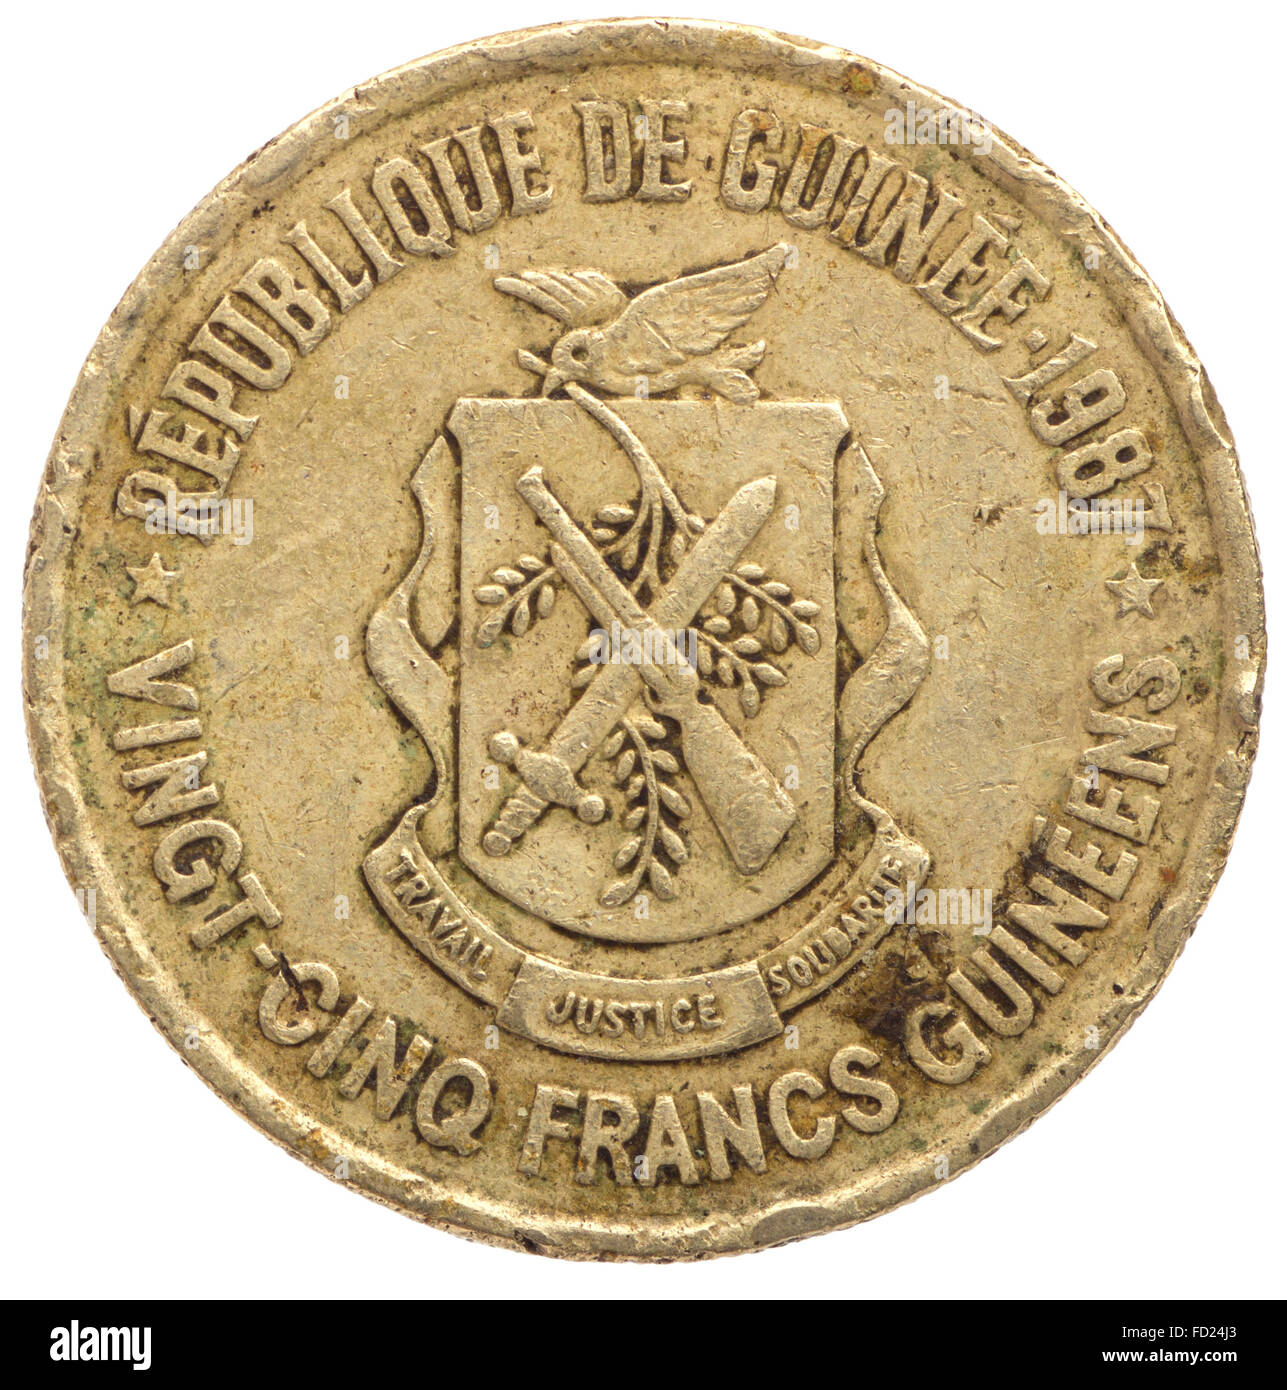 25 franchi guineani coin, 1987, retromarcia, isolati su sfondo bianco Foto Stock